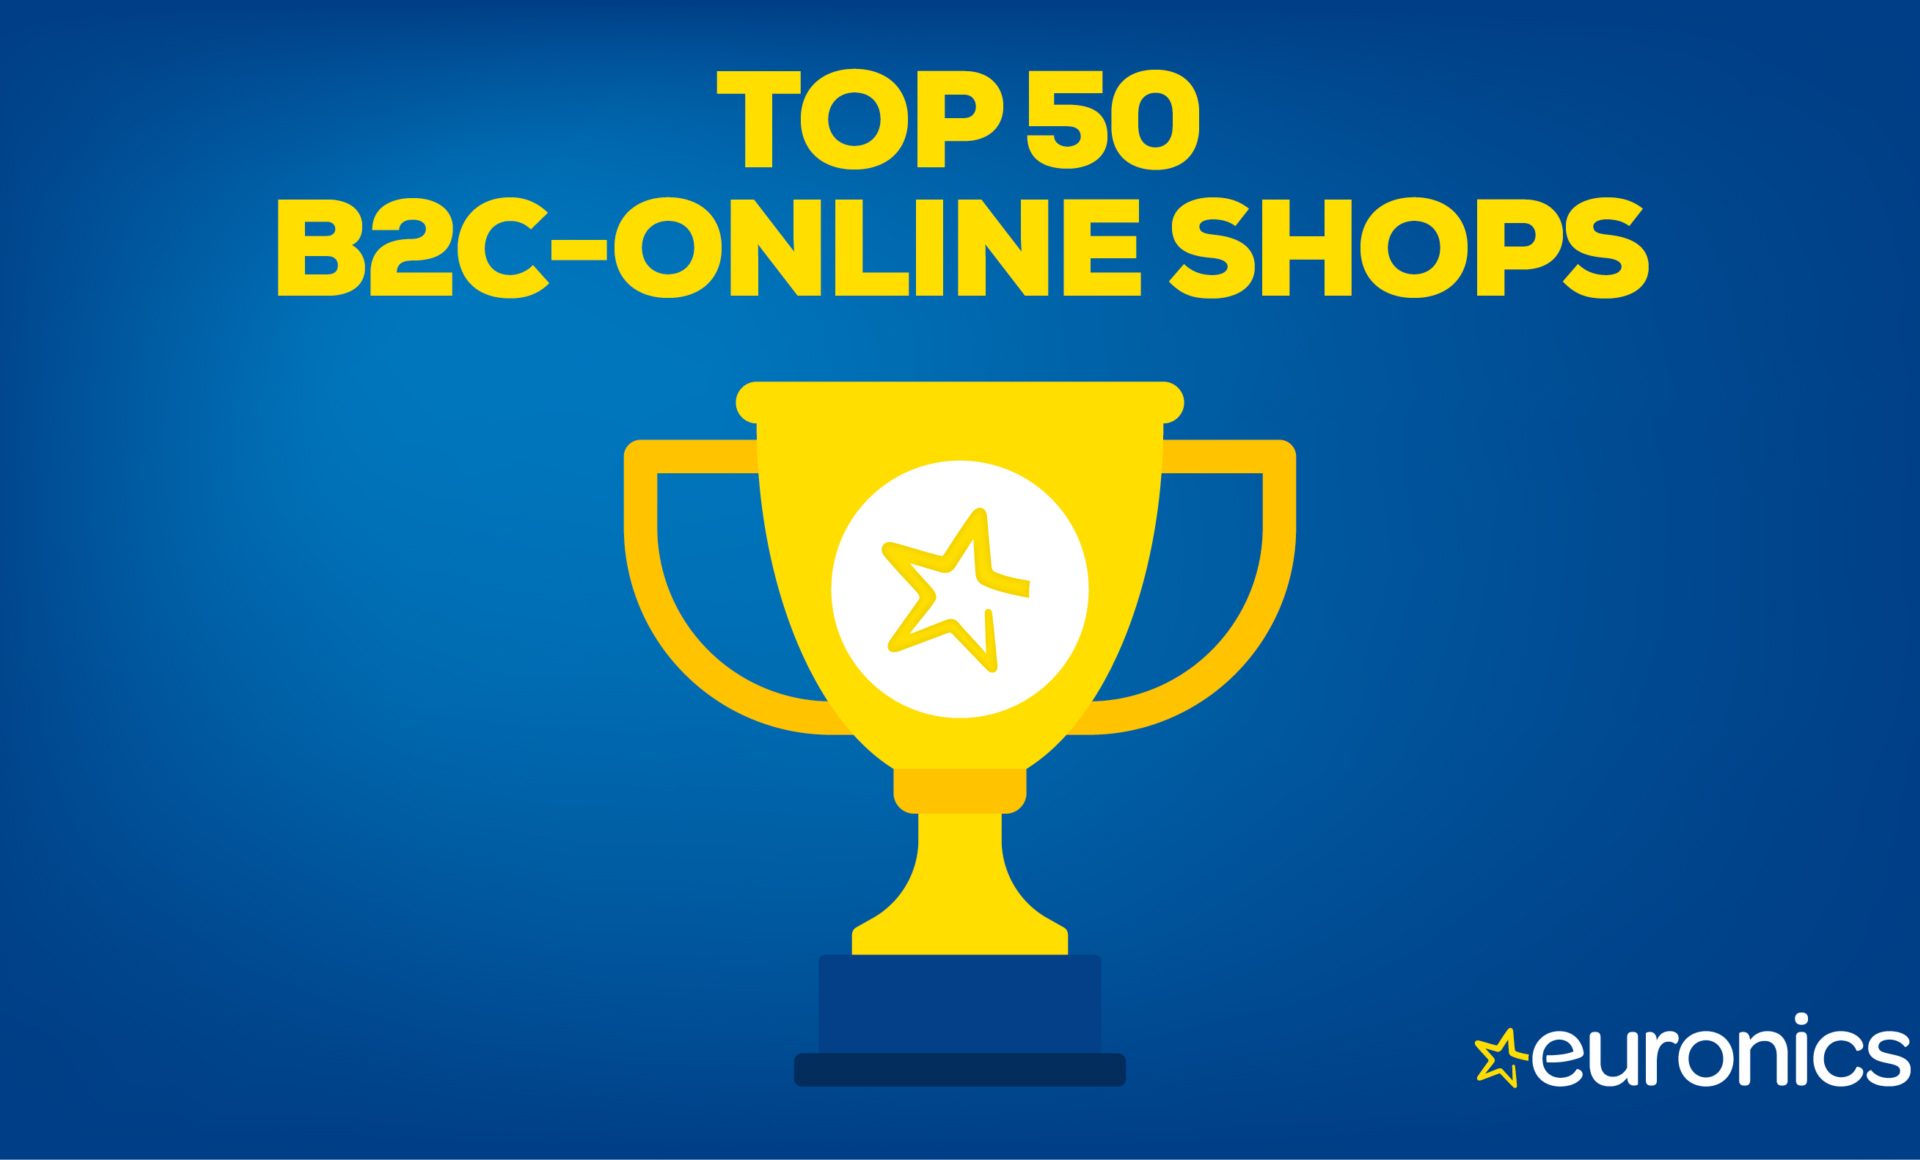 EURONICS sichert sich Platz 41 unter den Top 50 B2C-Onlineshops